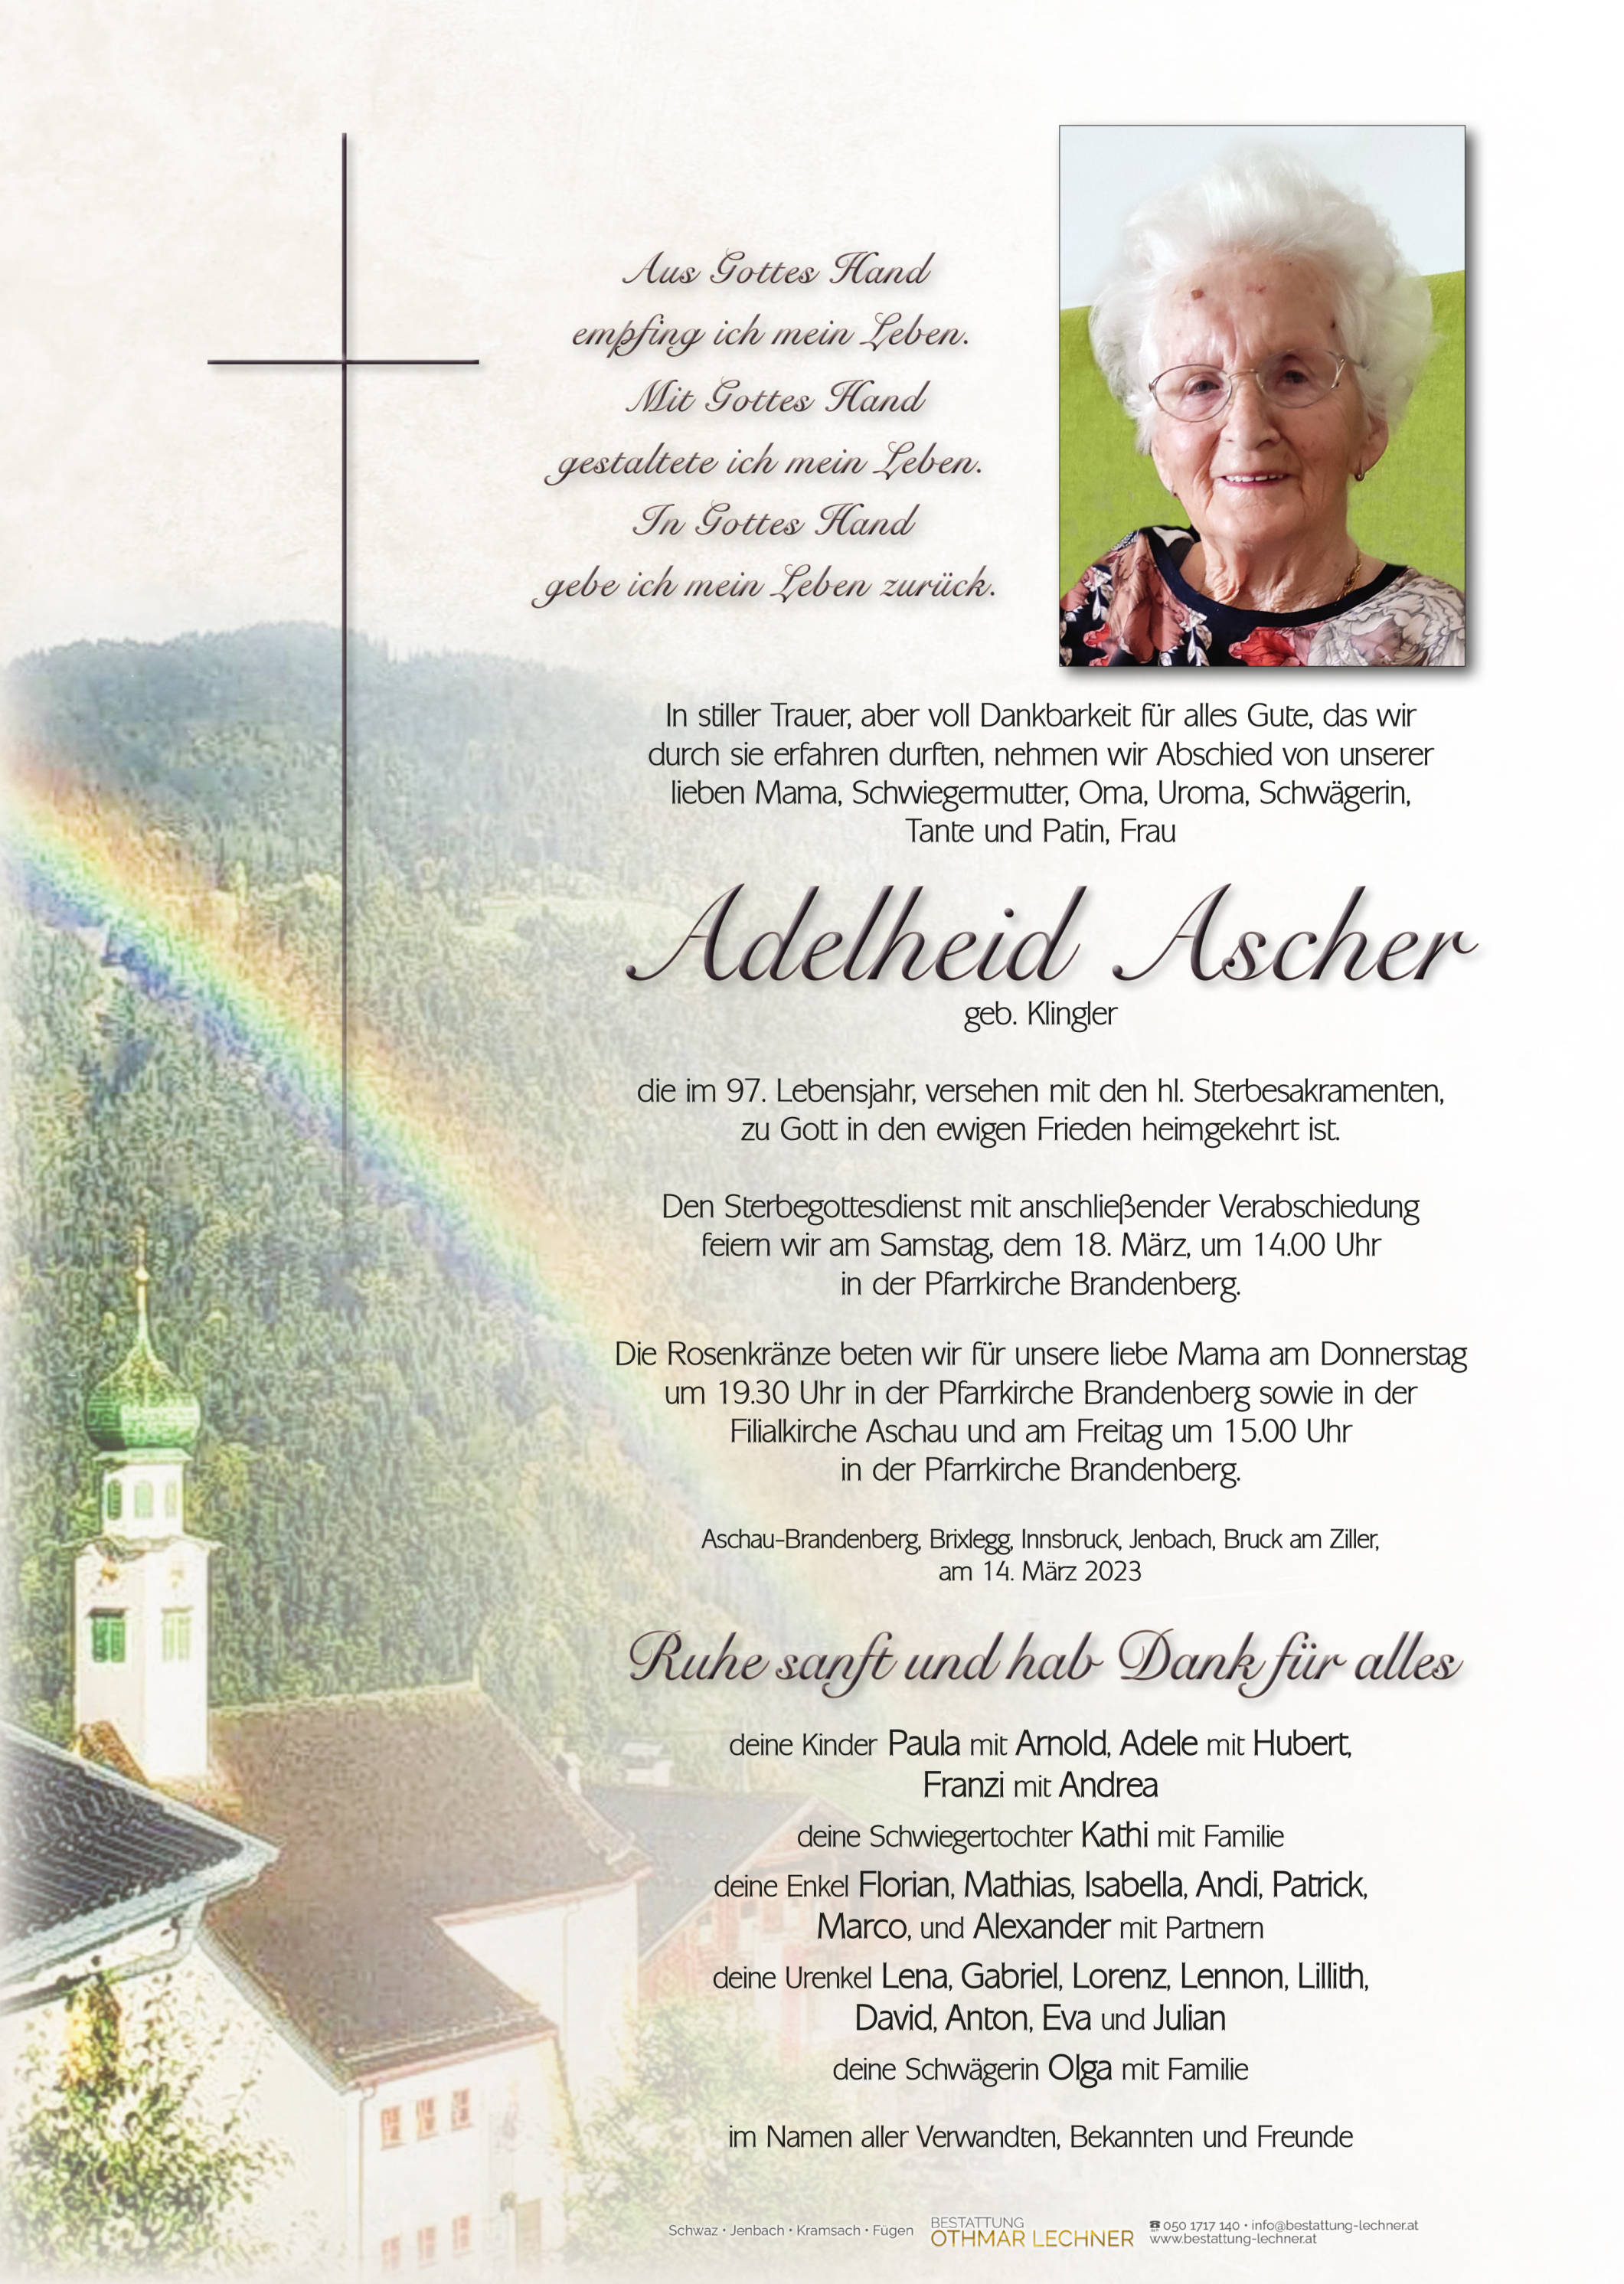 Adelheid Ascher